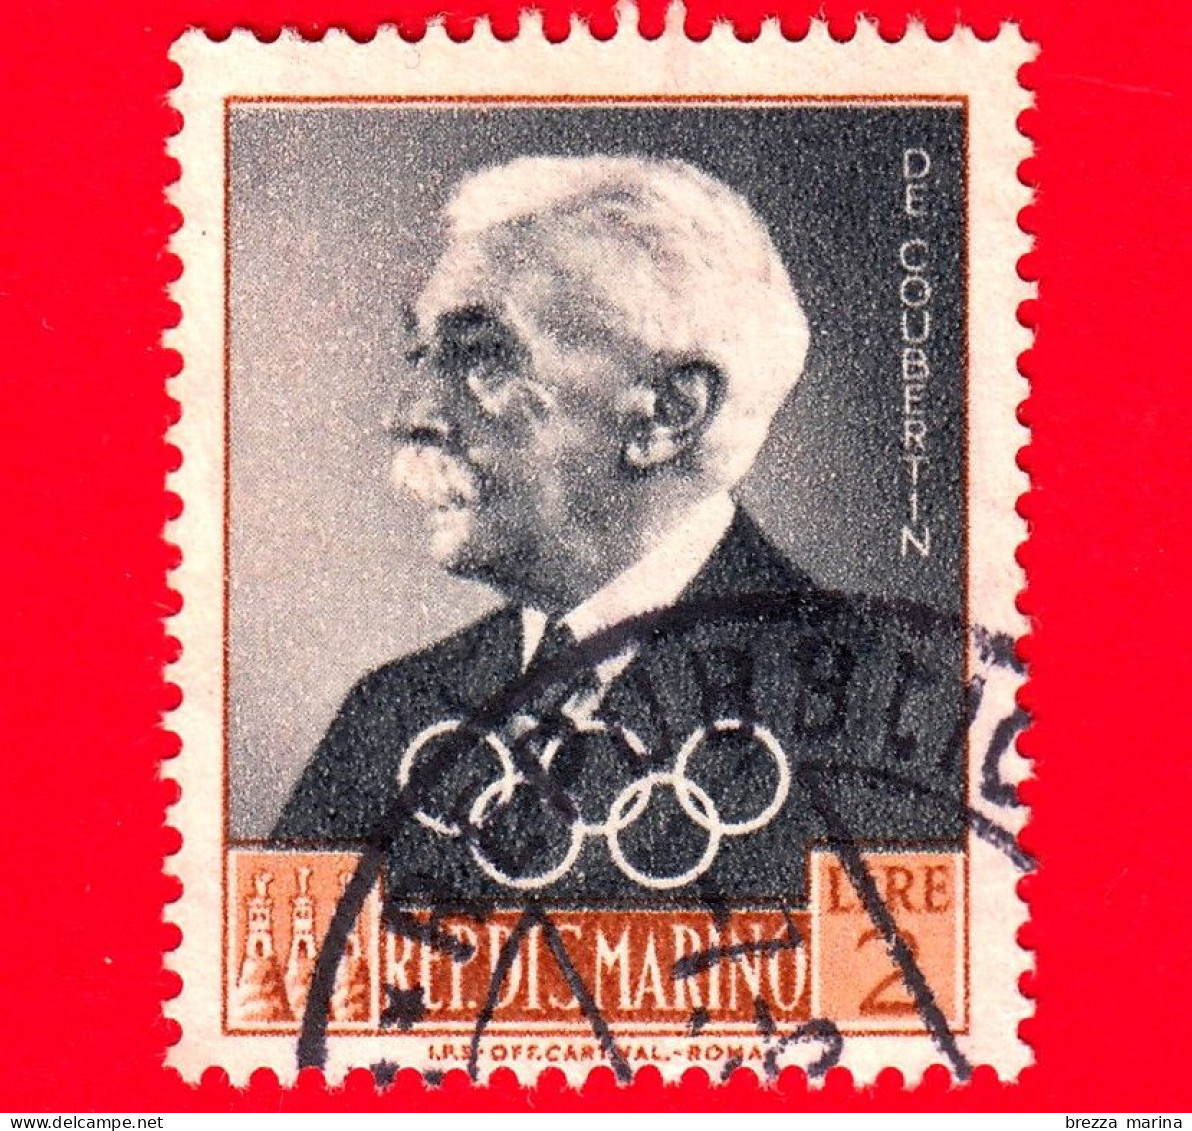 SAN MARINO - Usato - 1959 - Dirigenti Del Comitato Olimpico Internazionale - Pierre Baron De Coubertin - 2 - Used Stamps